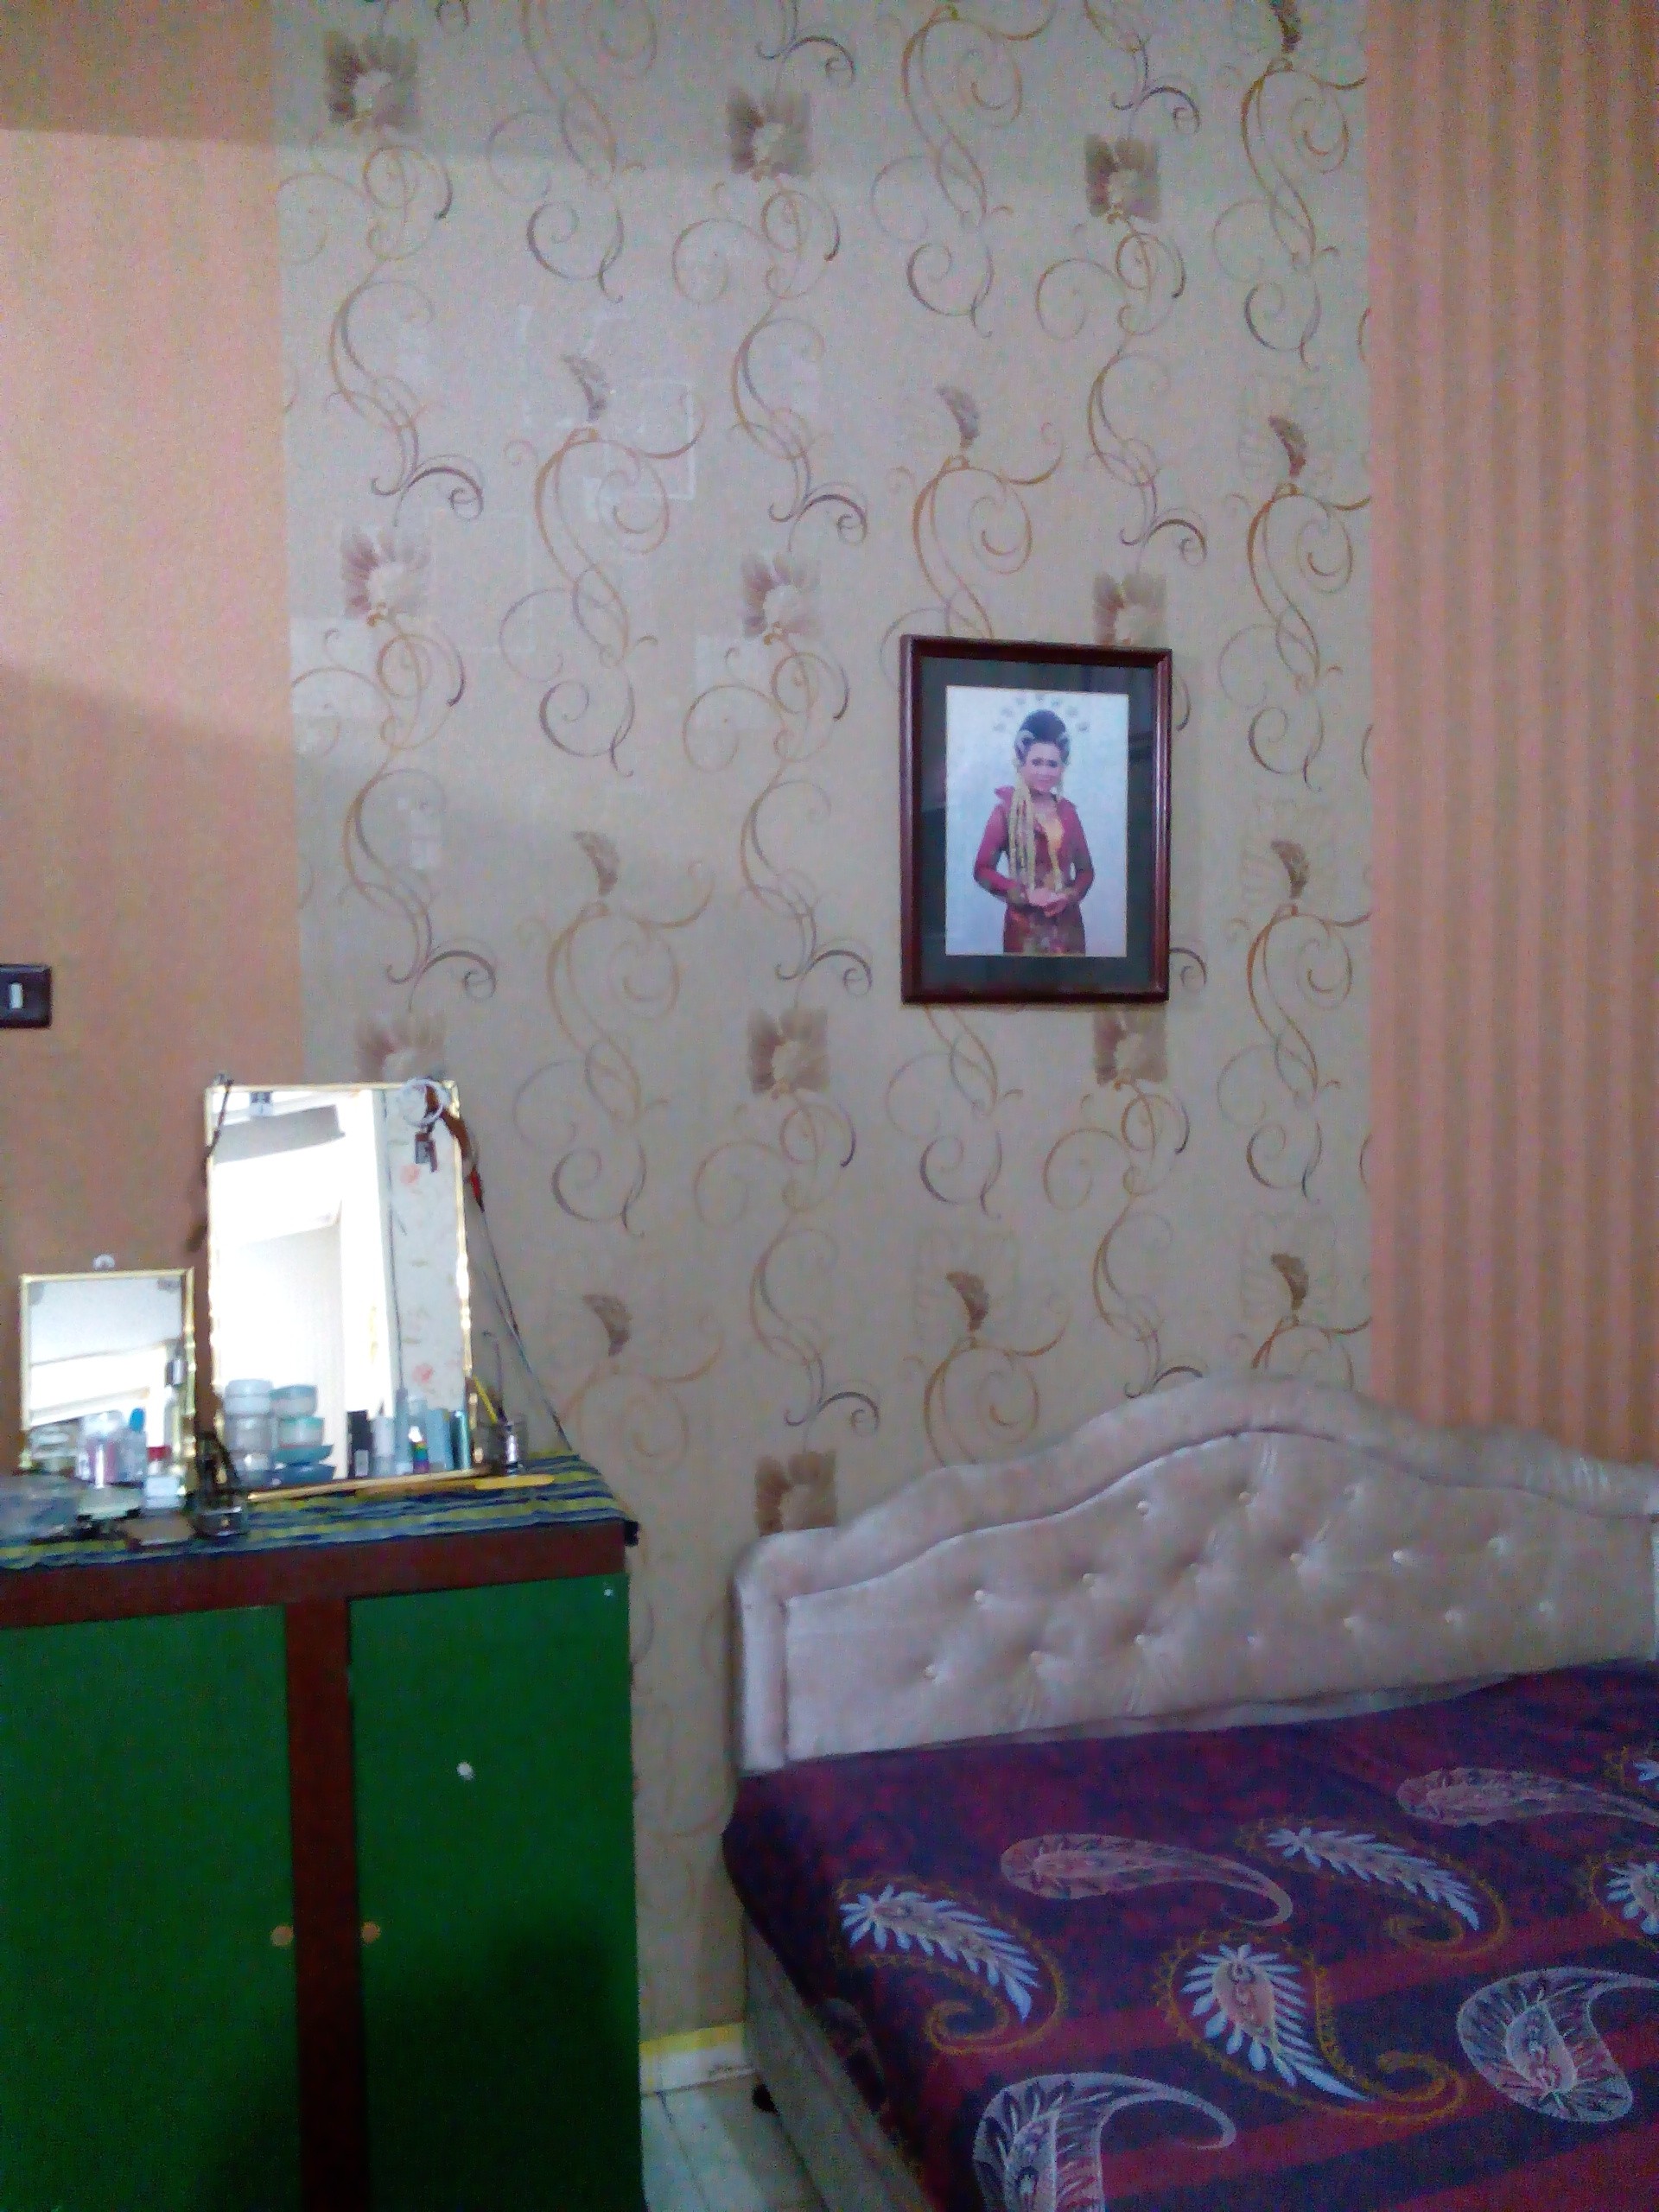 wallpaper dinding kamar tidur romantis